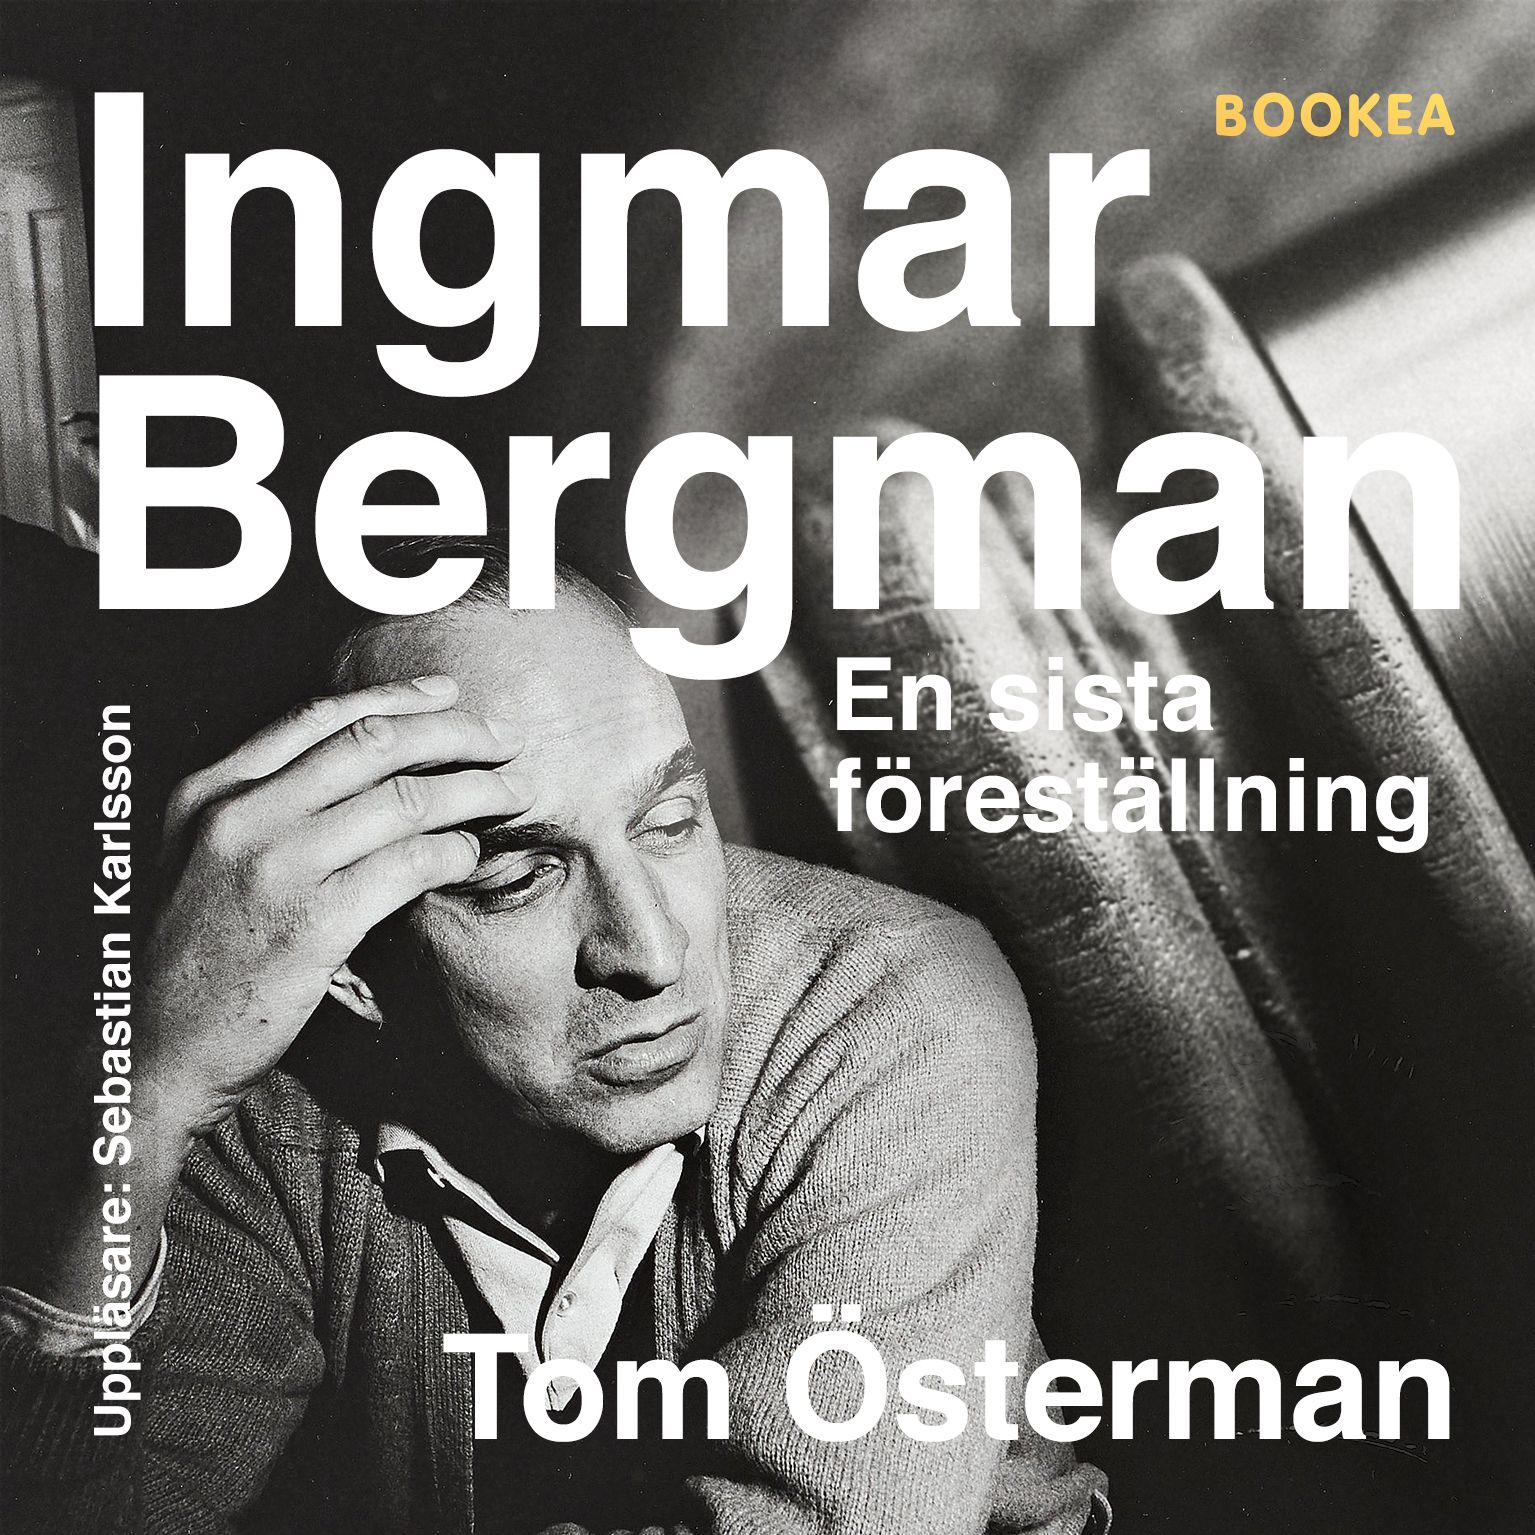 Ingmar Bergman - En sista föreställning, audiobook by Tom Österman